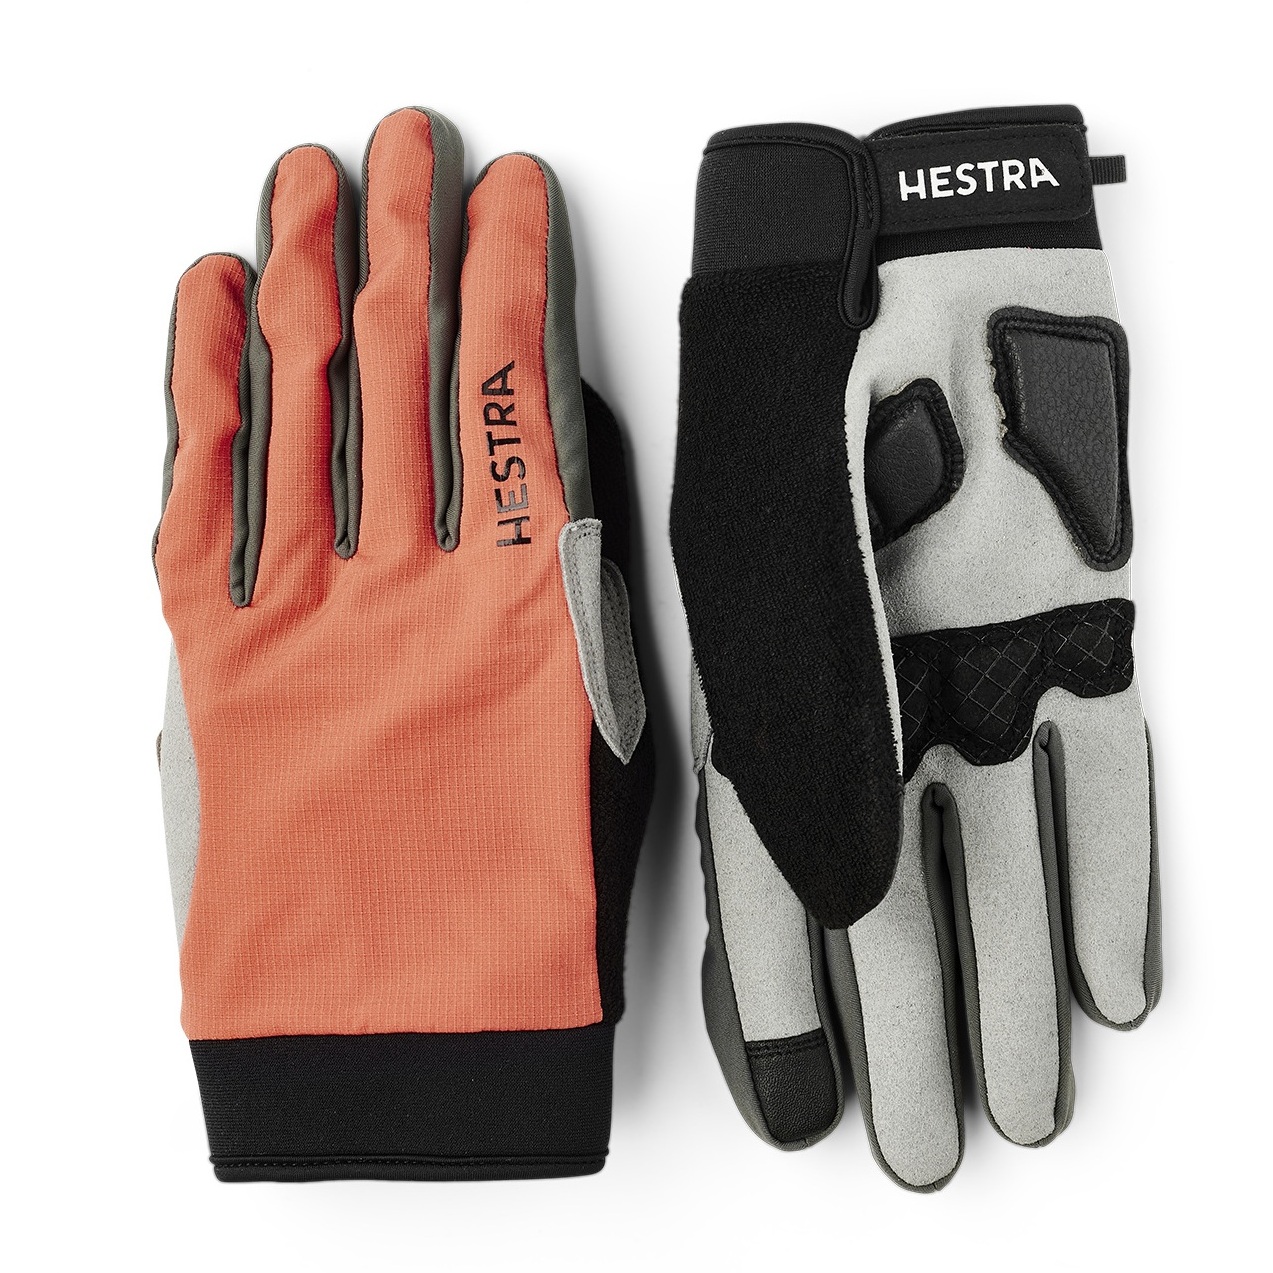 Picture of Hestra Bike Guard Long - 5 Finger Gloves - orange